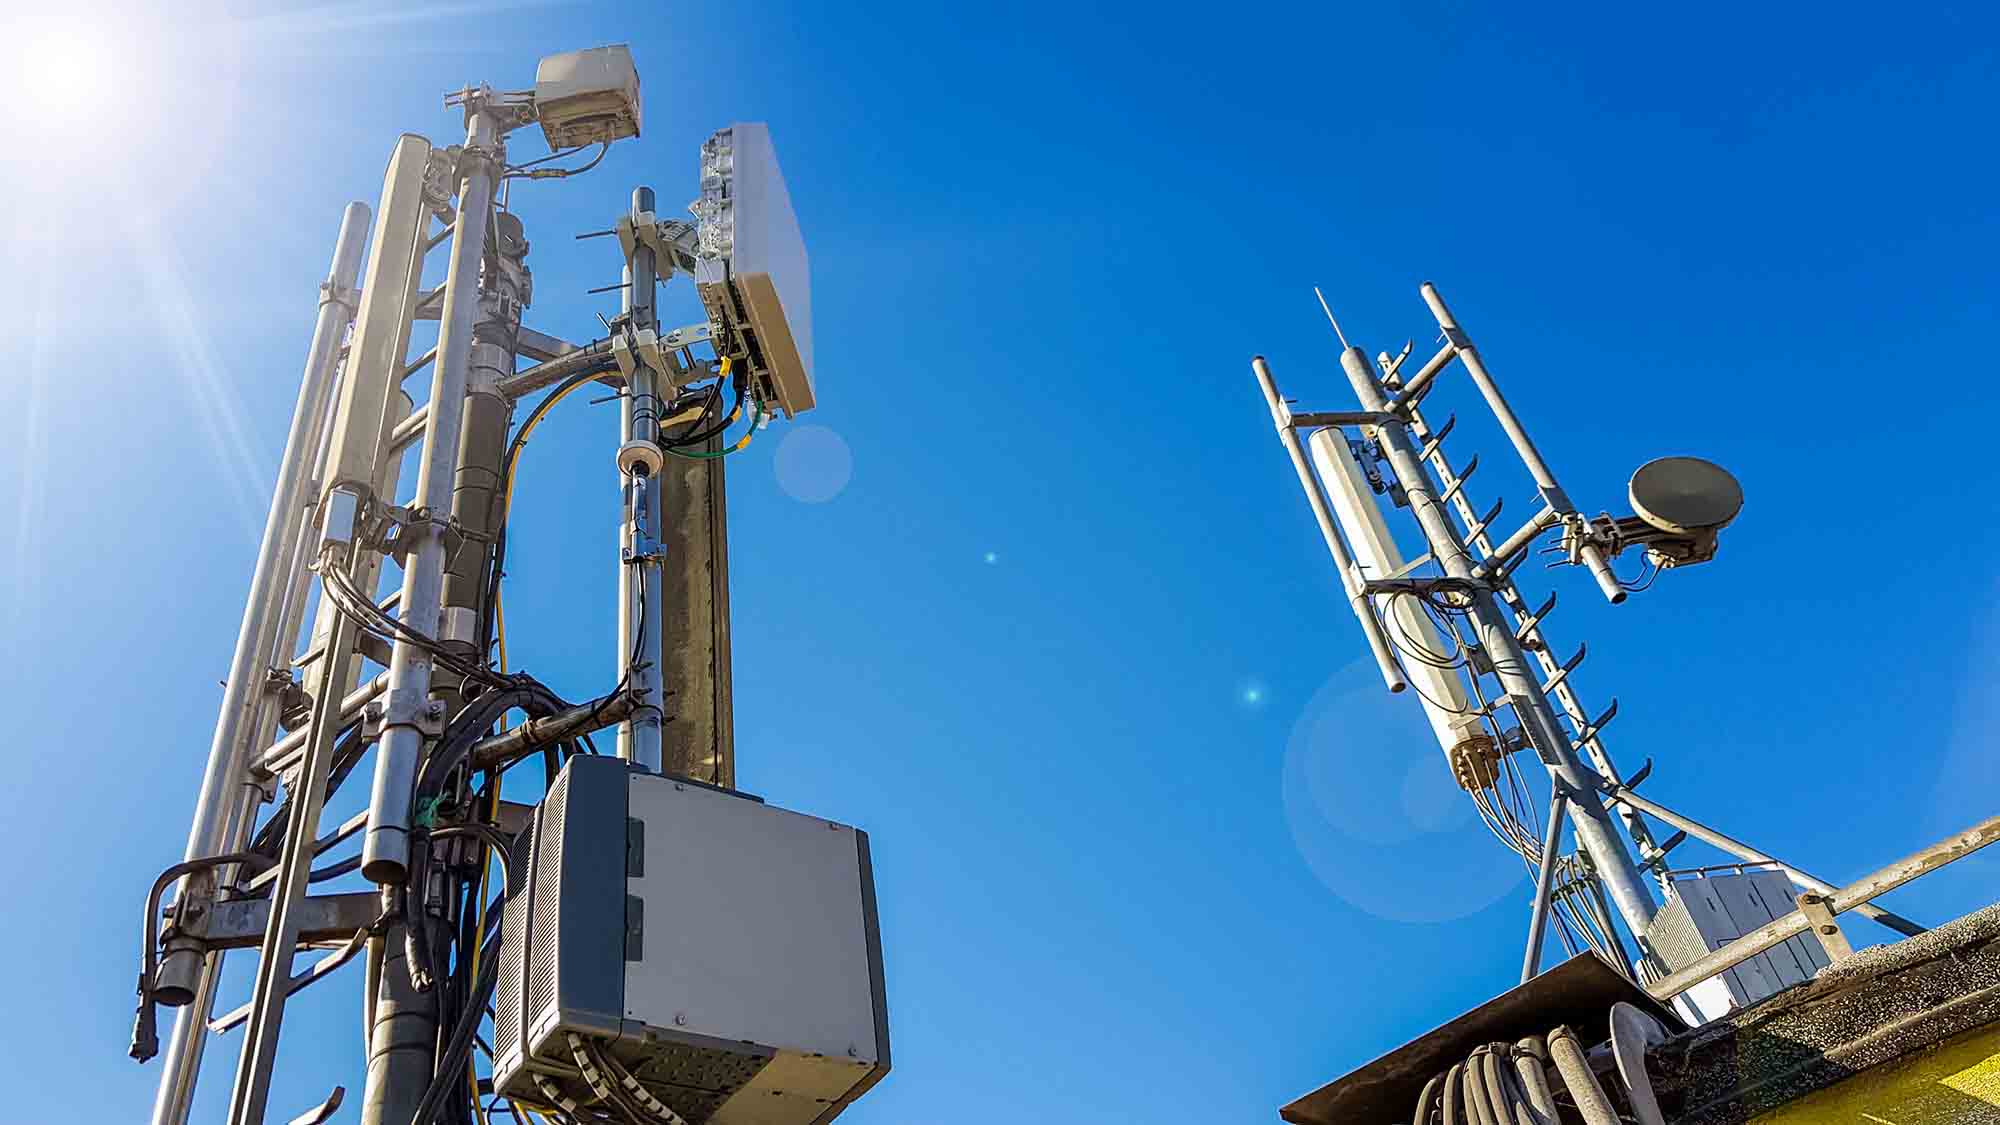  Smart Antennas for Mobile Communication